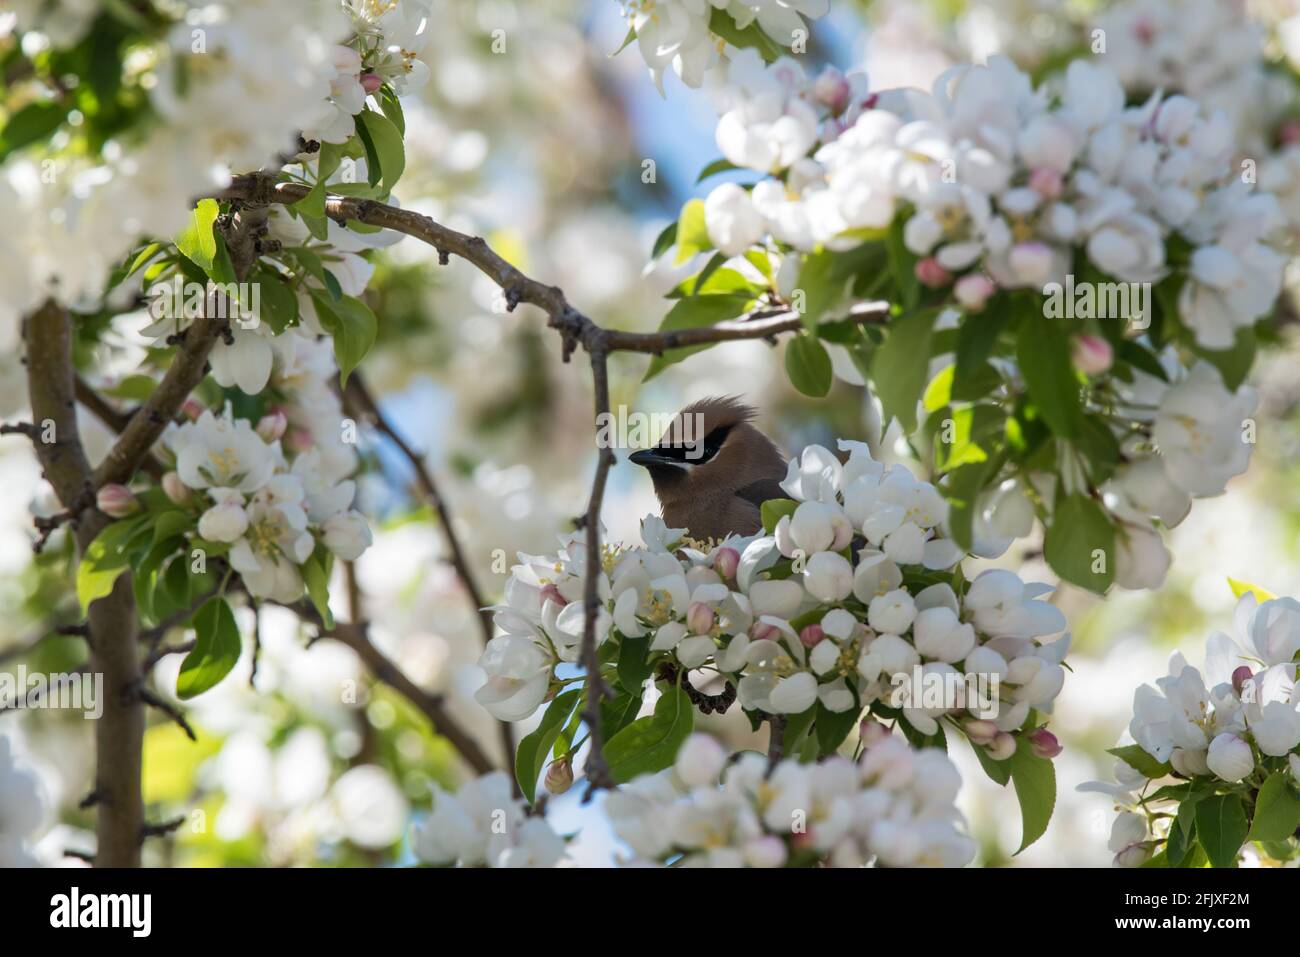 Cedar Waxwing puise sa tête hors des fleurs d'écrevisse. Ces beaux oiseaux fourraillent sur les insectes et une grande variété de fruits et de baies. Banque D'Images